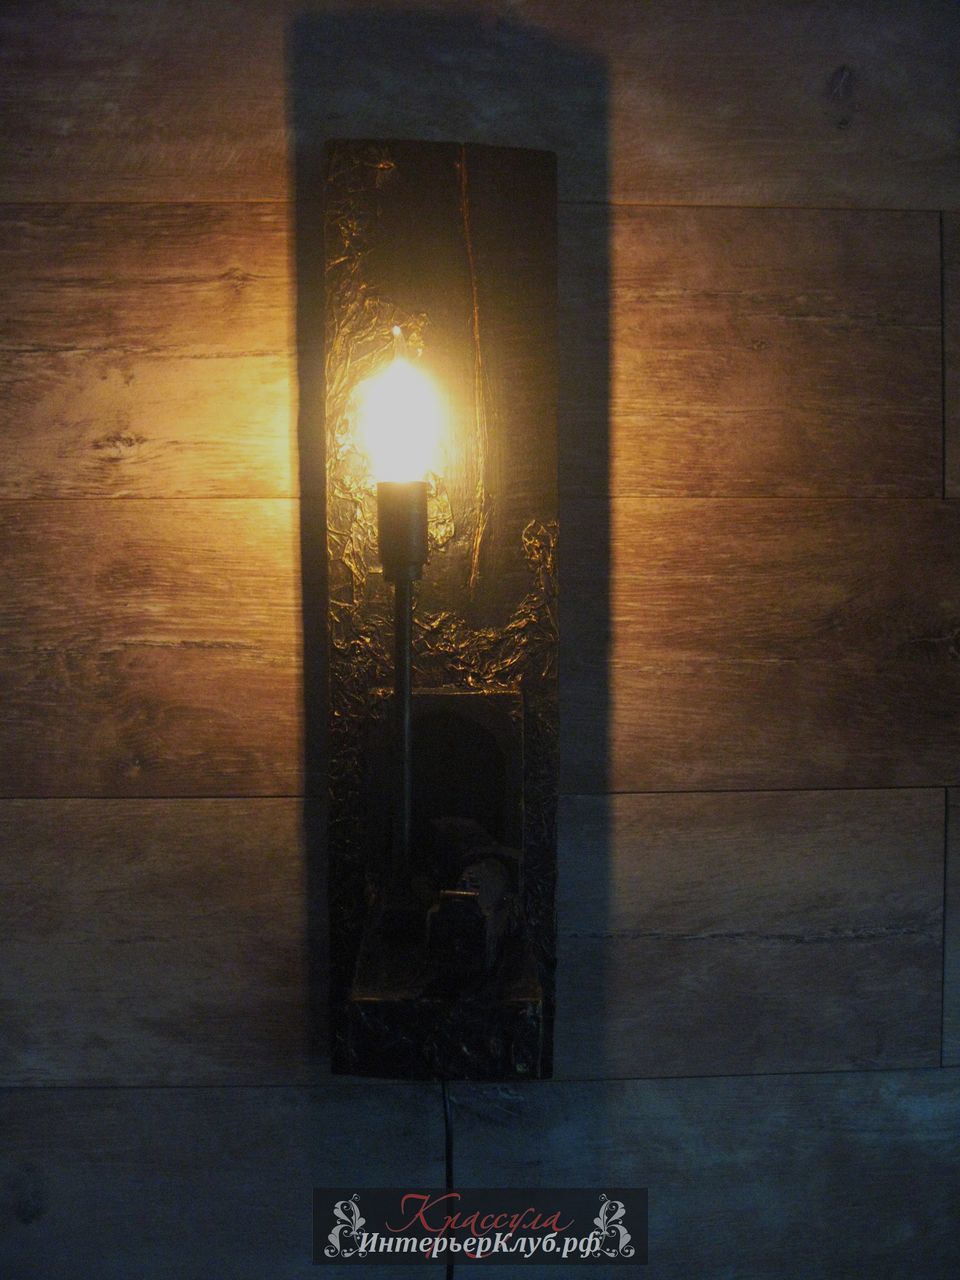 125 Светильник Путь - амбарная доска, с элементами декора (паровоз ),  цвет черный с позолотой.  Эксклюзивные светильники ручной работы, авторские светильники ручной работы